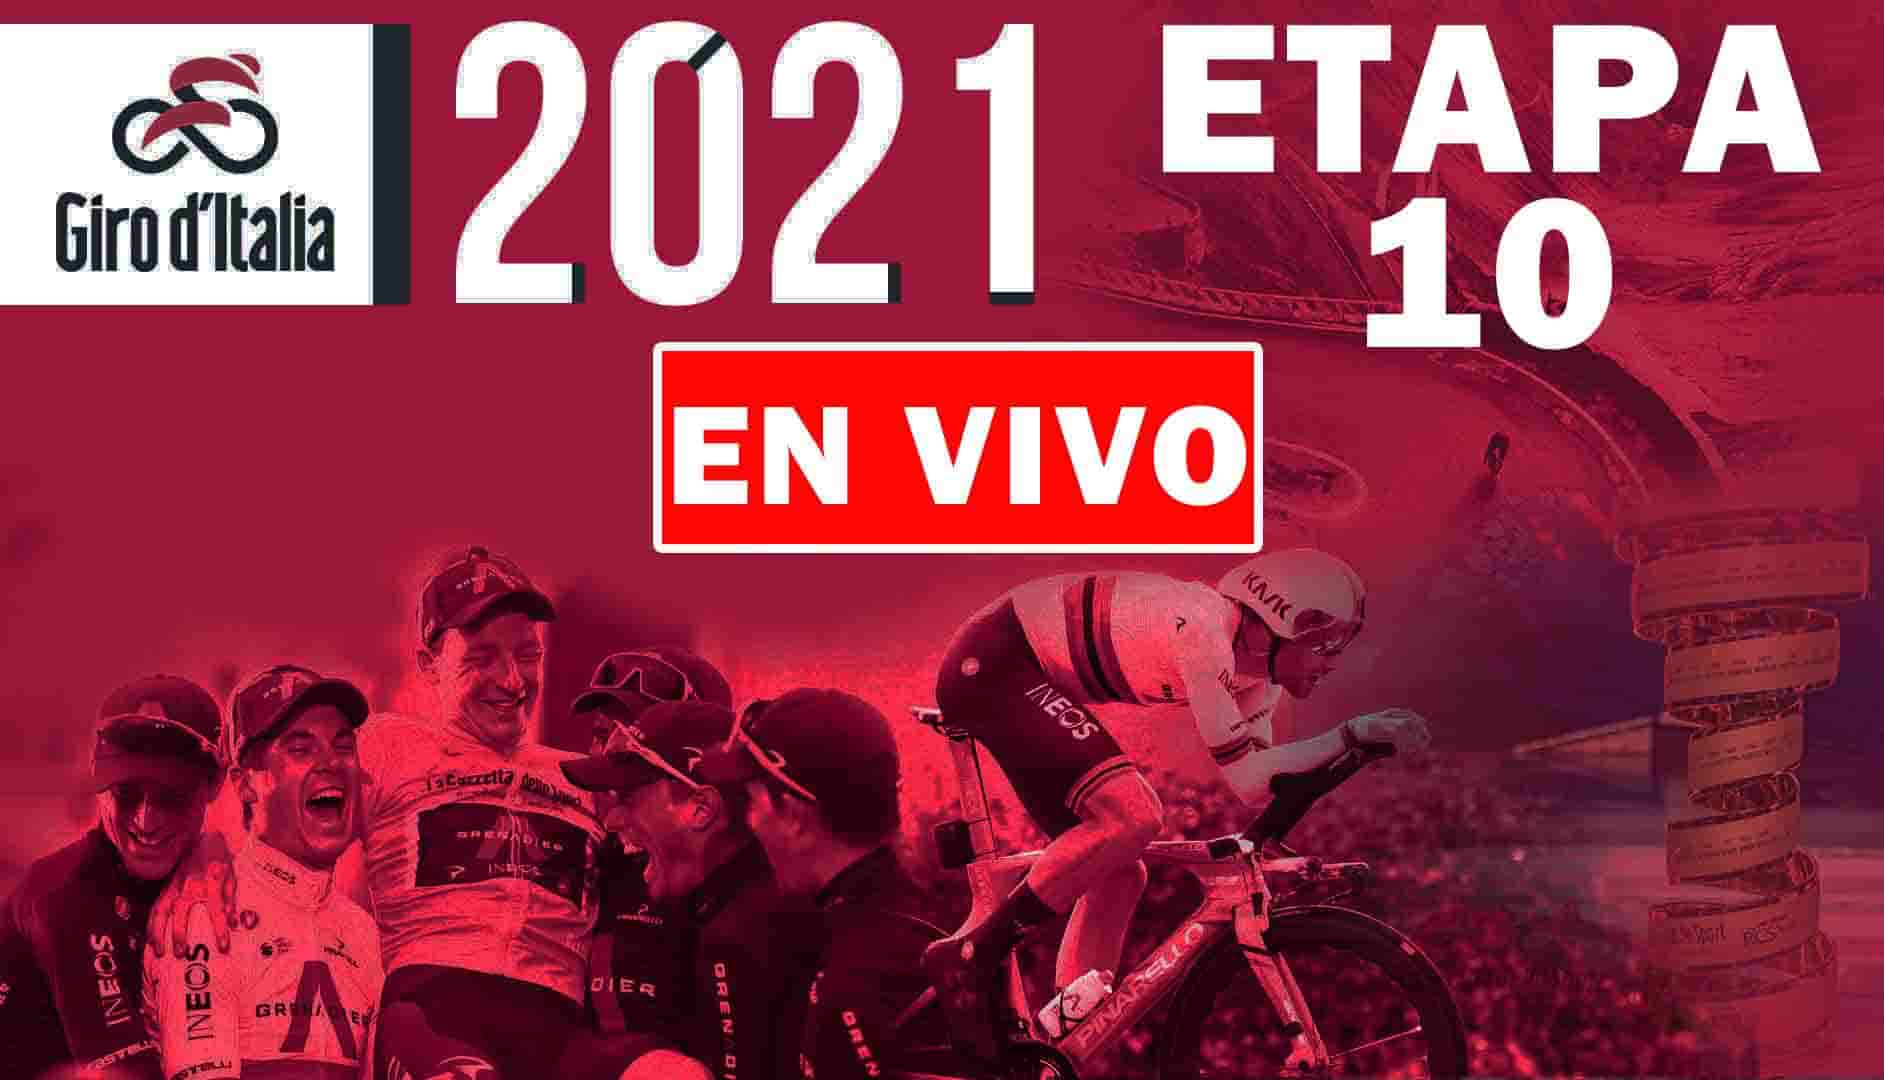 Etapa 10 del Giro d´Italia EN VIVO.